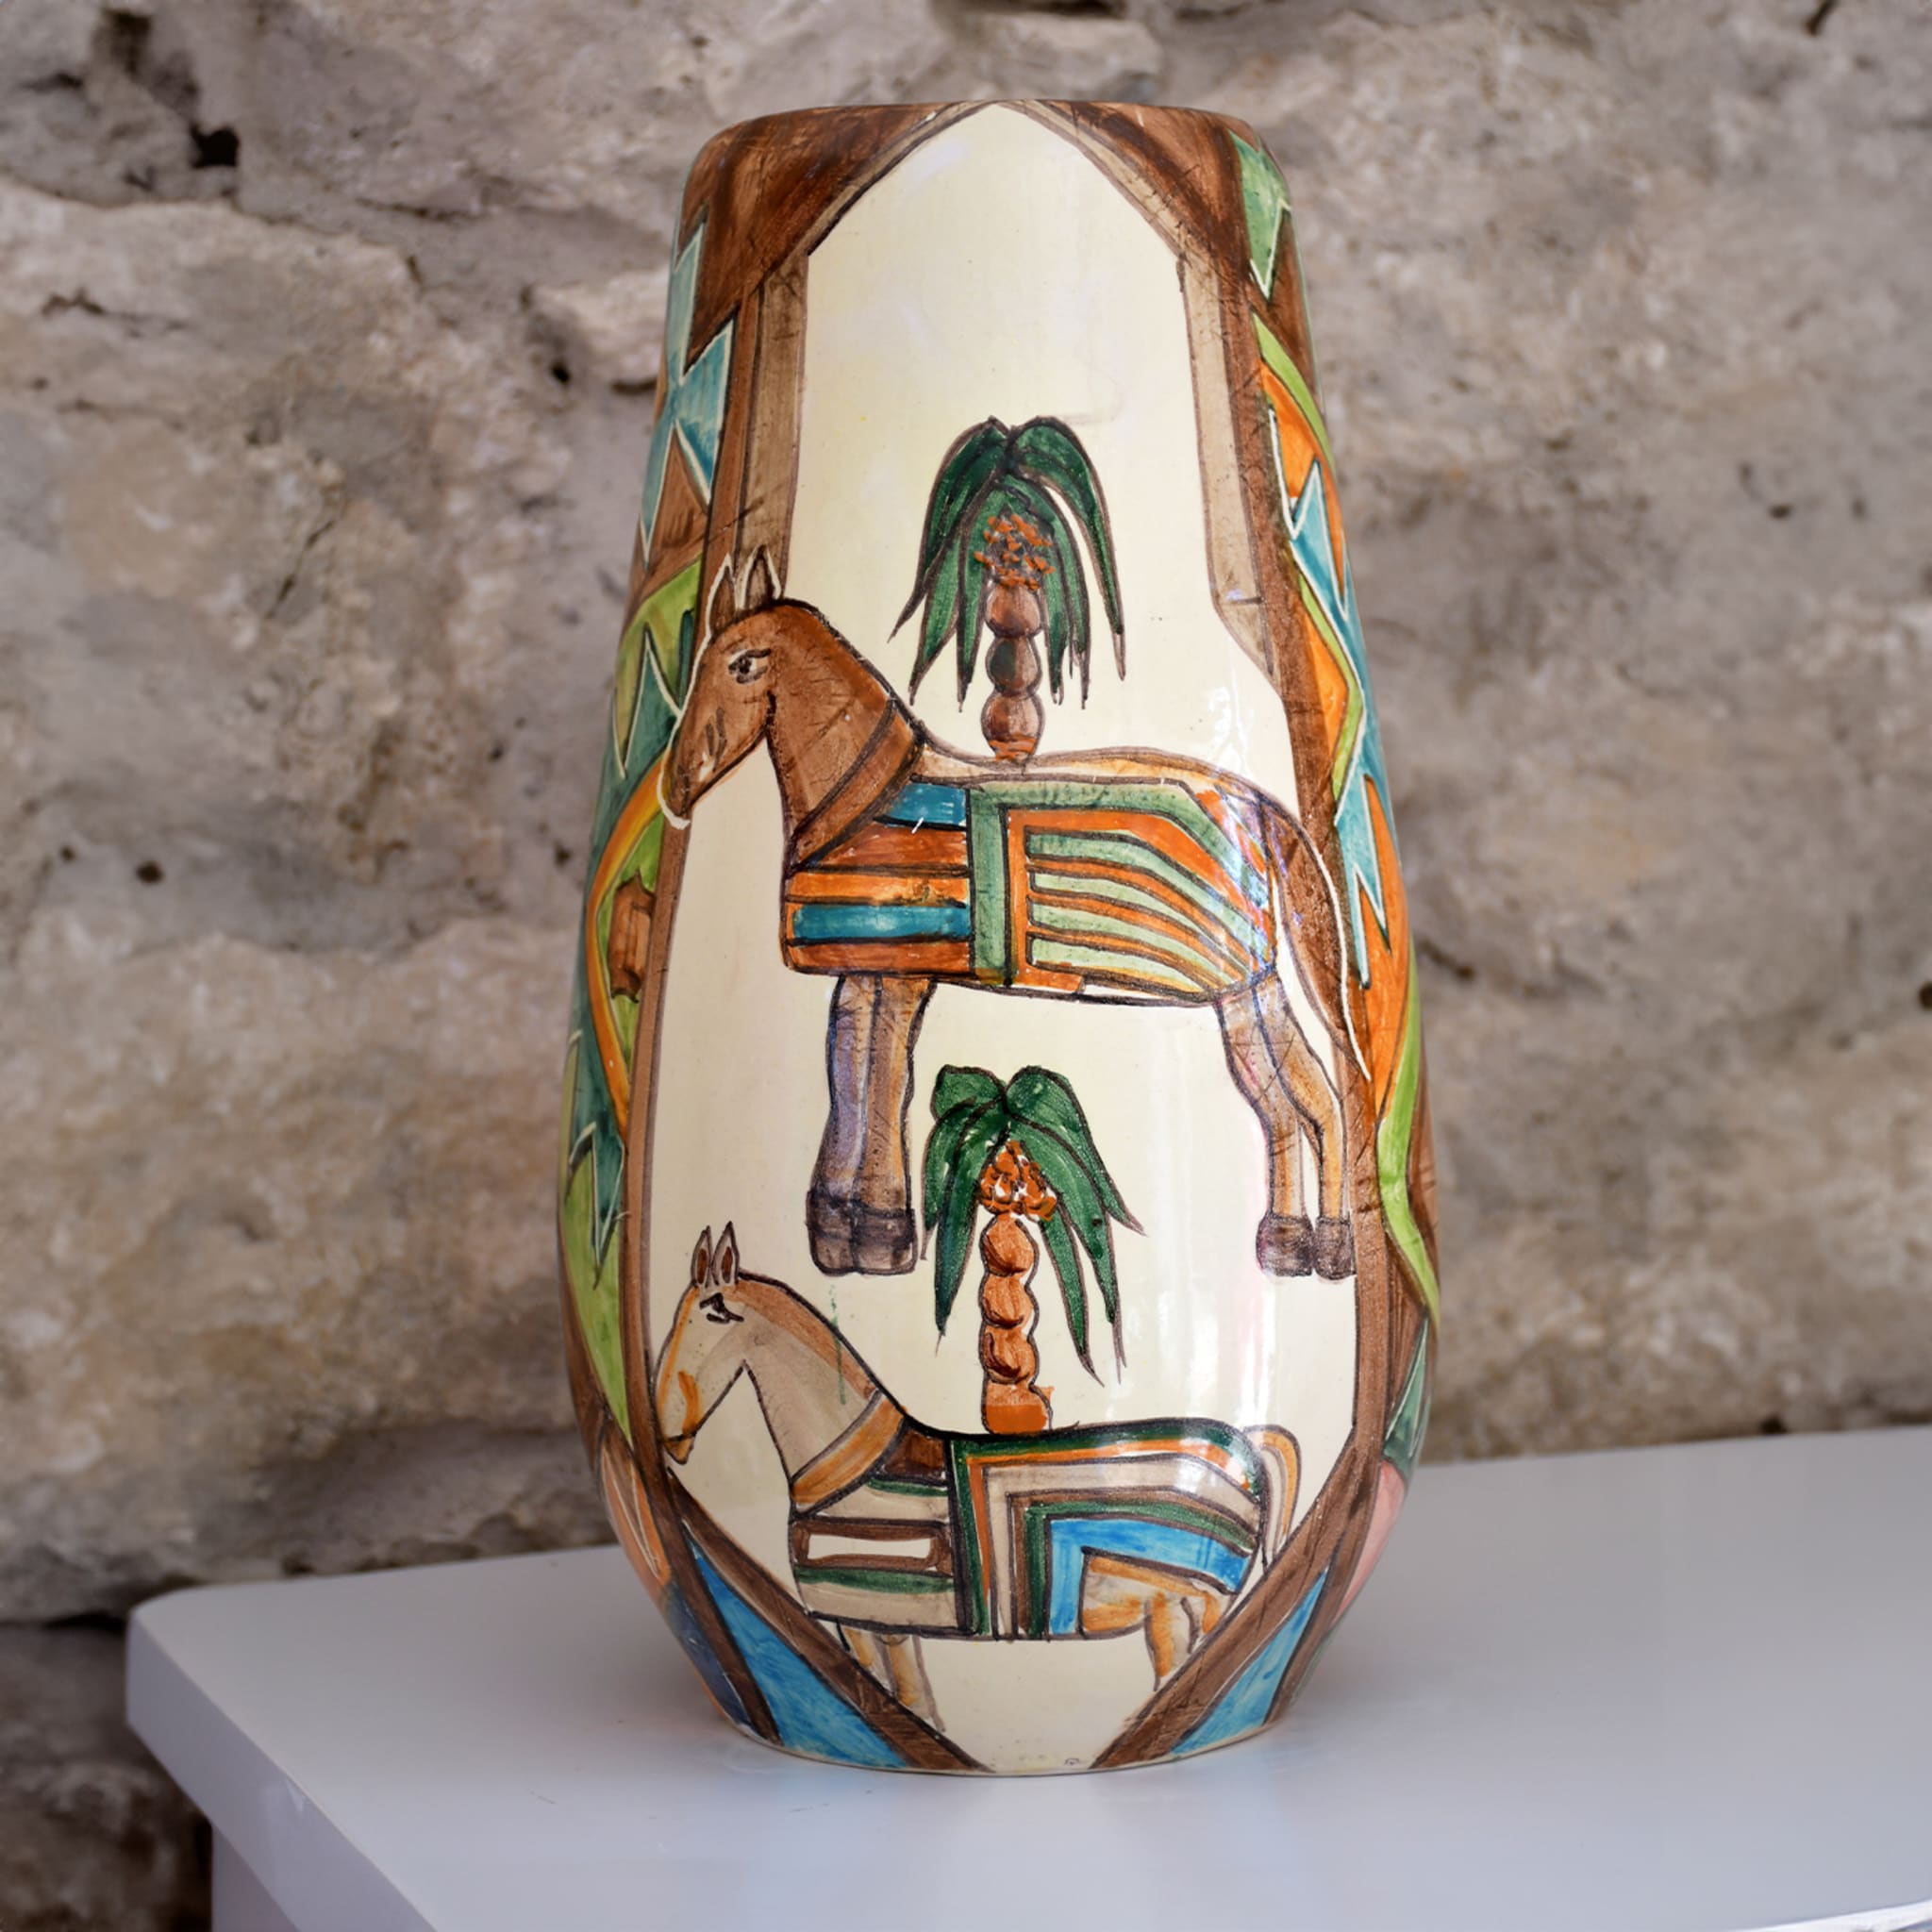 Hermes Polychrome Vase - Alternative view 1